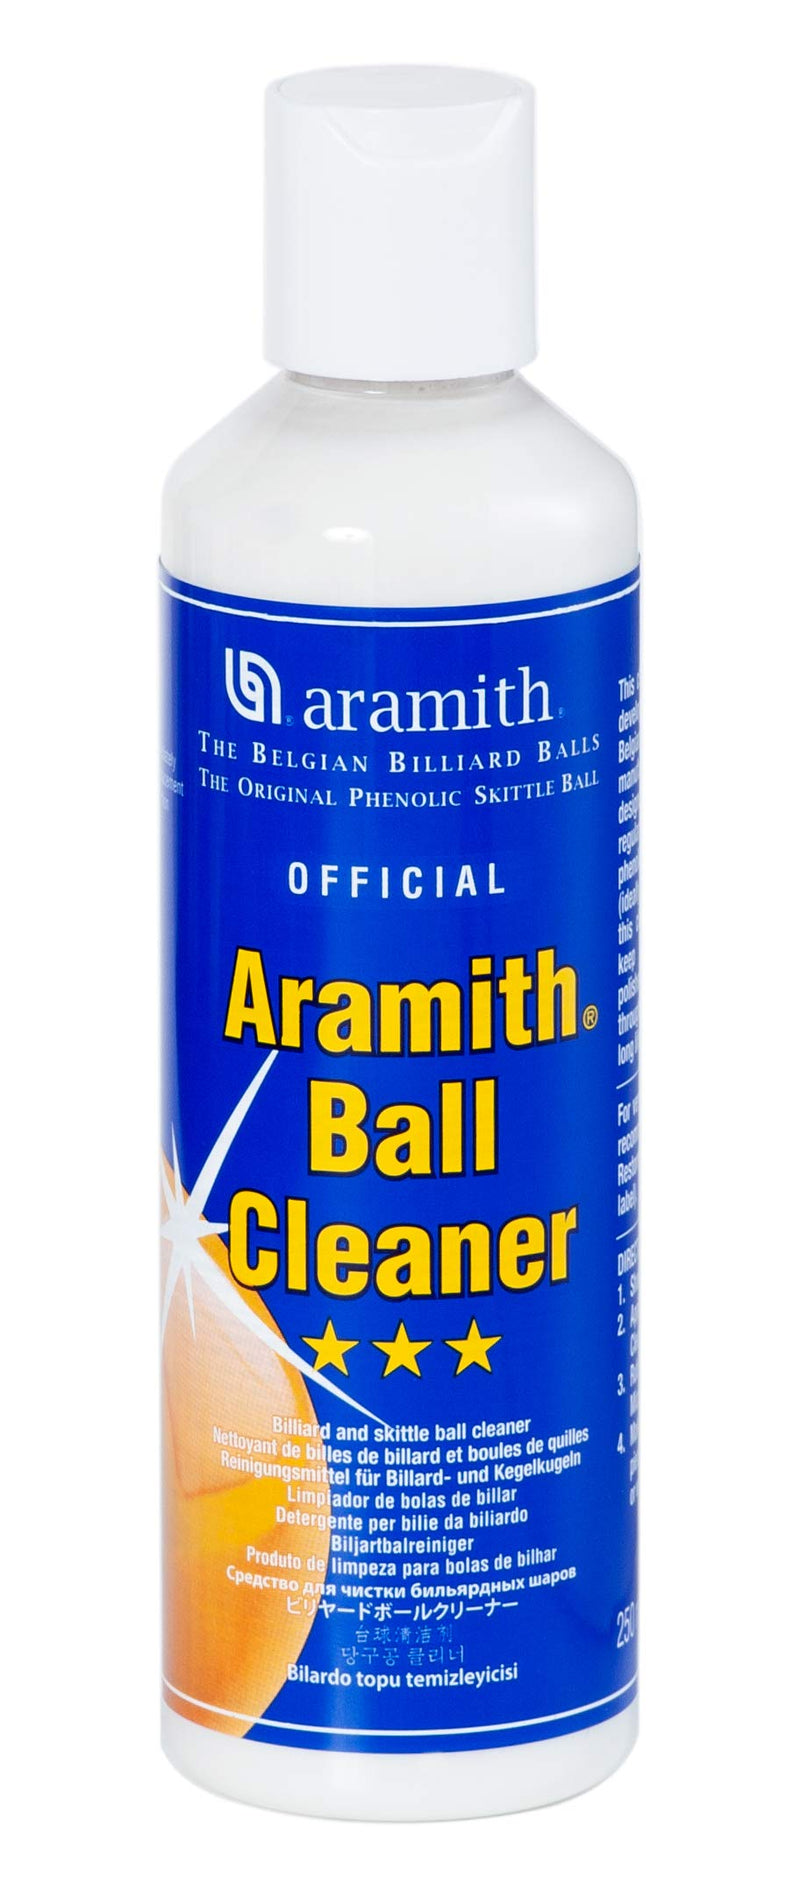 [AUSTRALIA] - Billiard Ball Cleaner & Ball Restorer in a Blister 8.4 fl.oz. bottles 